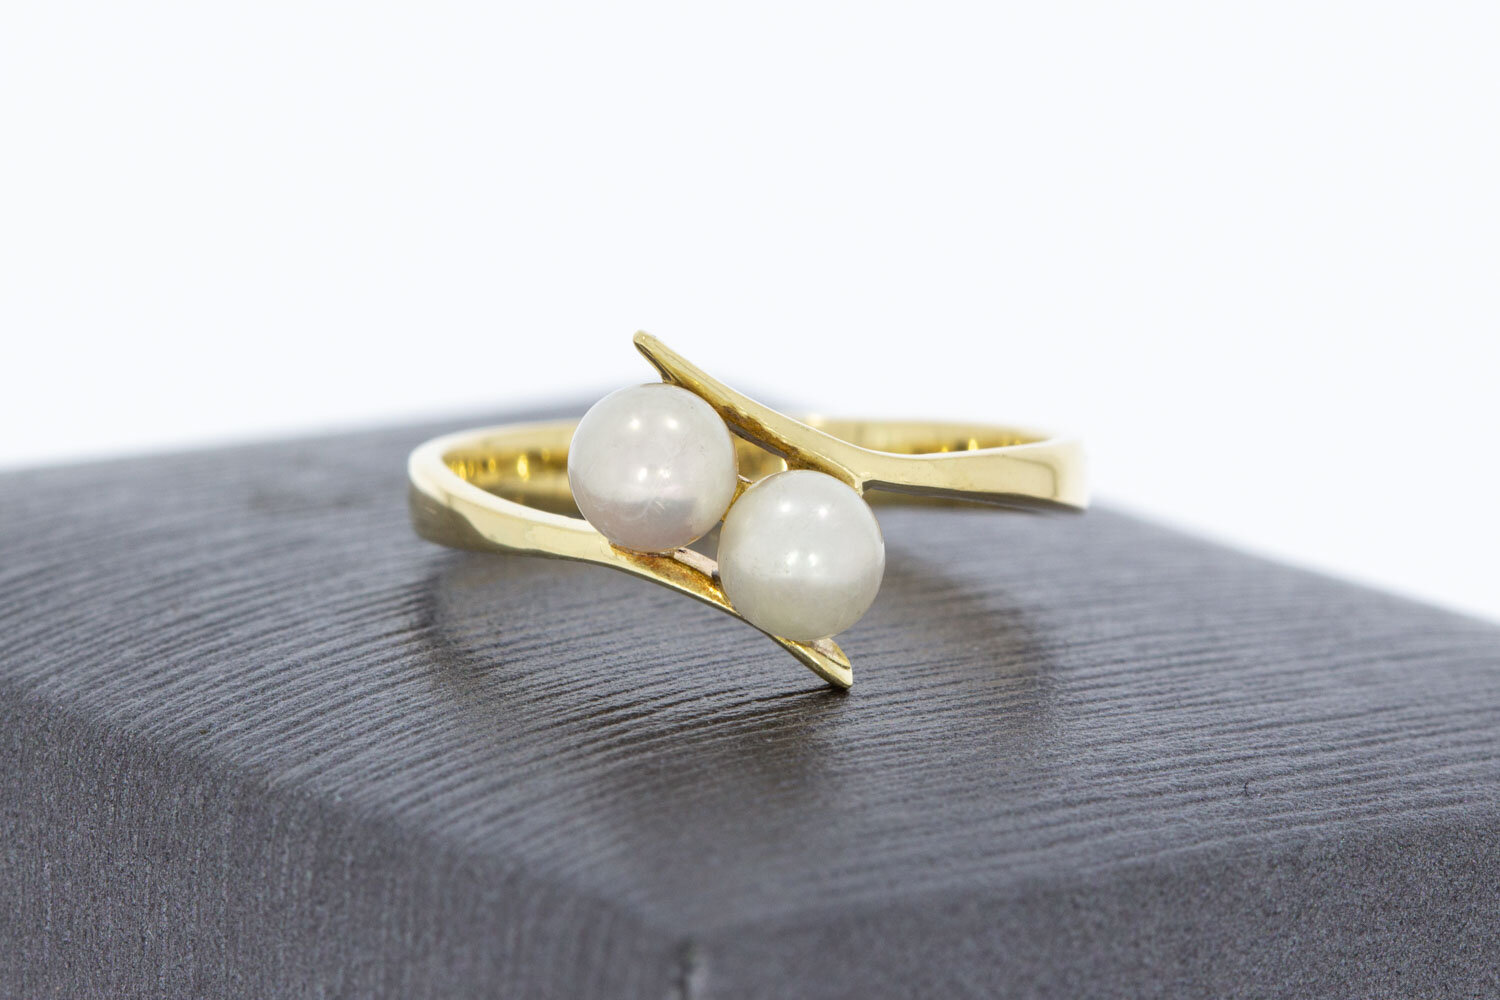 Geschwungene Ring 585 Gold mit Perlen - 17,3 mm